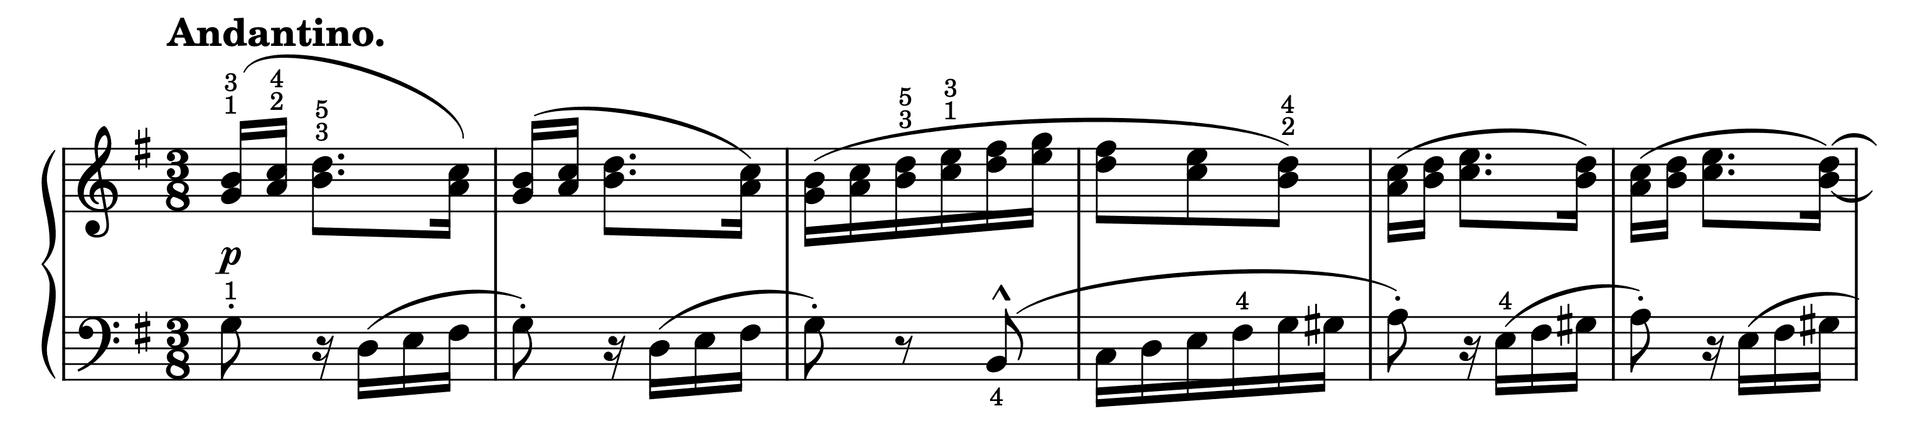 Excerpt of Etude in G Major Op. 37, No. 42